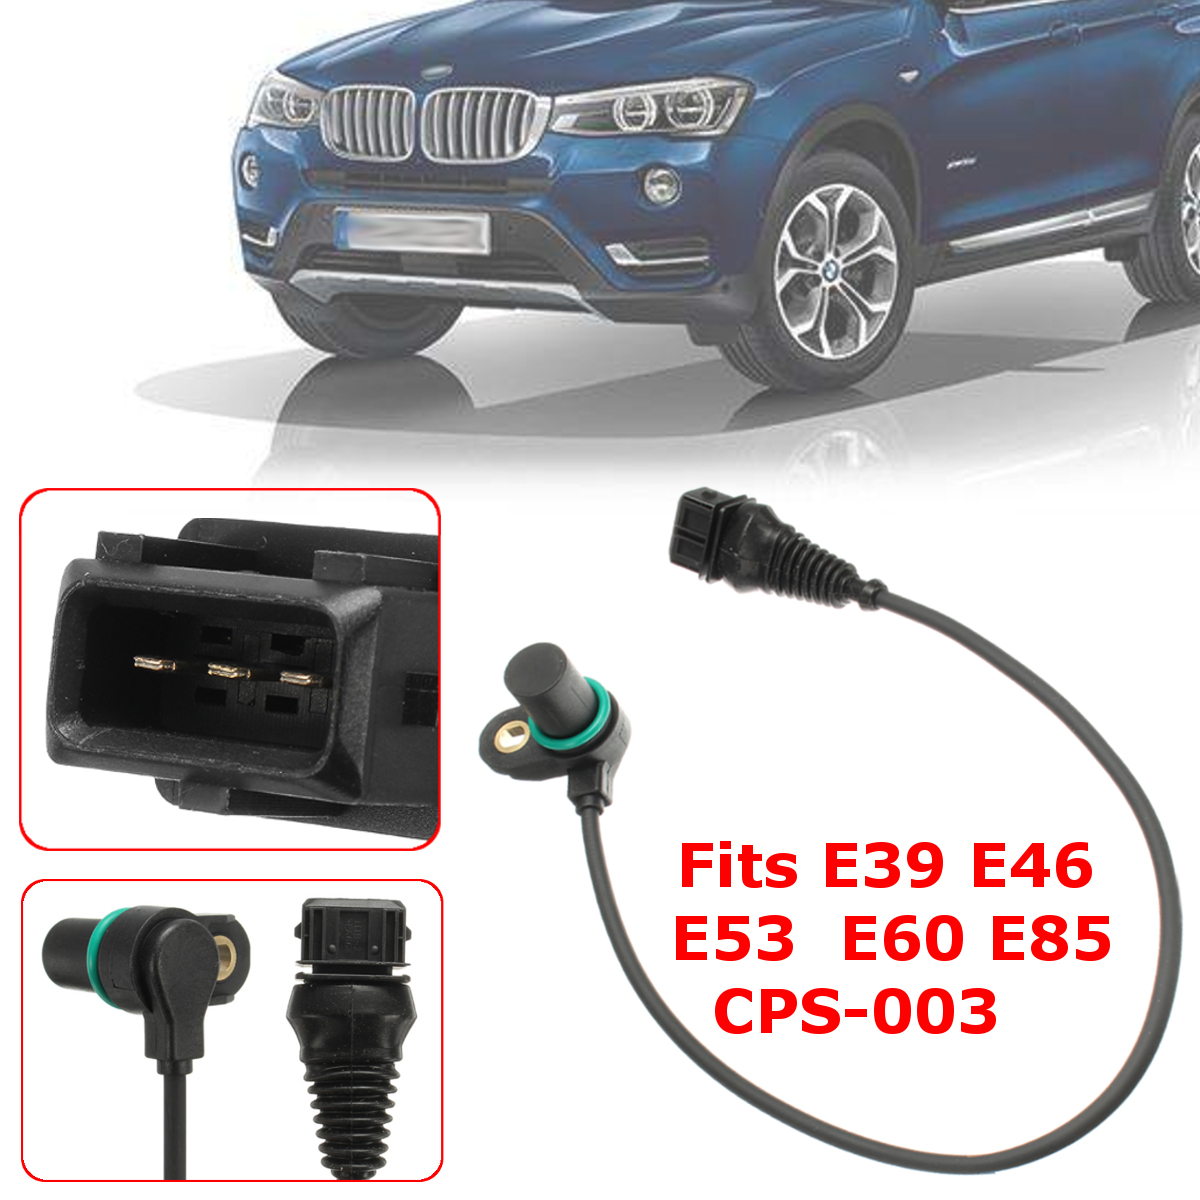 Car-Crankshaft-Camshaft-Position-Sensor-for-BMW-E39-E46-E53-E60-E85-CPS-003-12141435350-12141438081-1449079